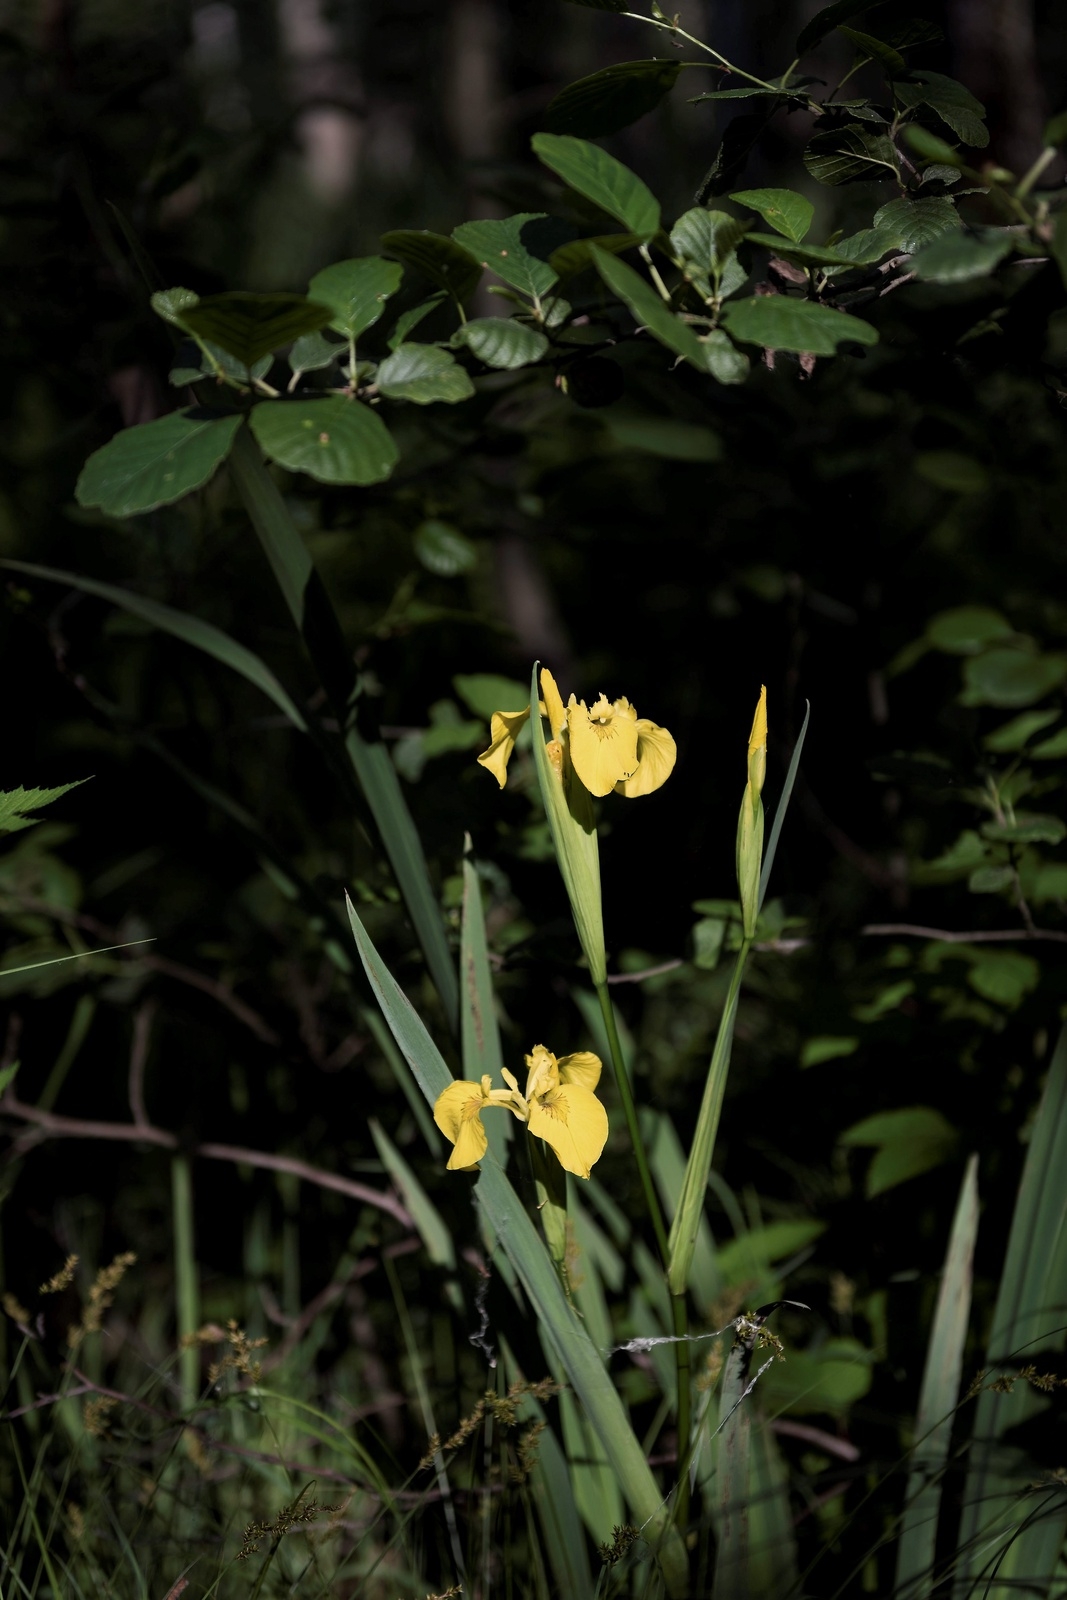 Den gula svärdsliljan blommar för fullt i alsumpskogen under tidig junimånad. Blomman tillhör irissläktet och trivs mycket bra i våt mark.